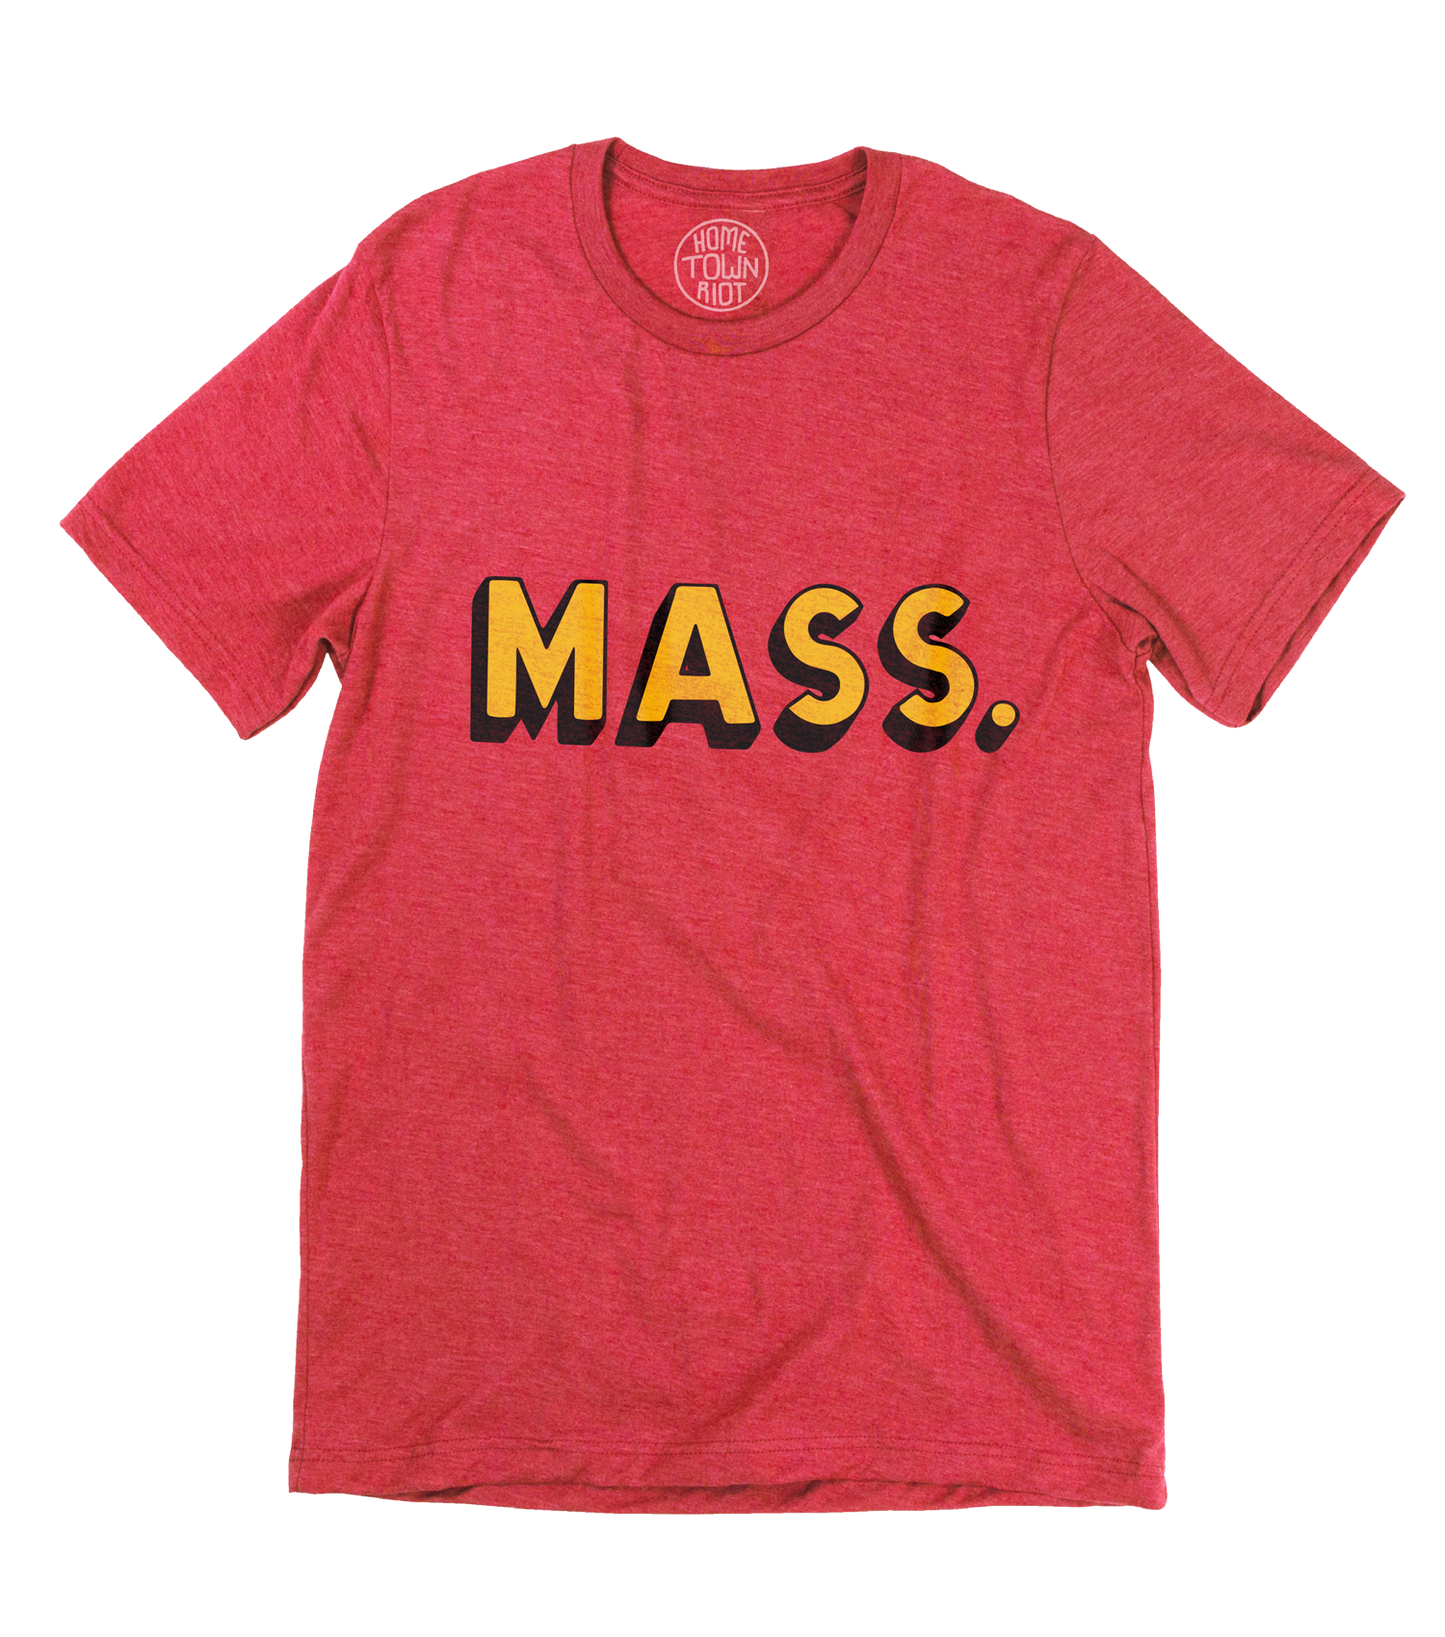 MASS. Shirt